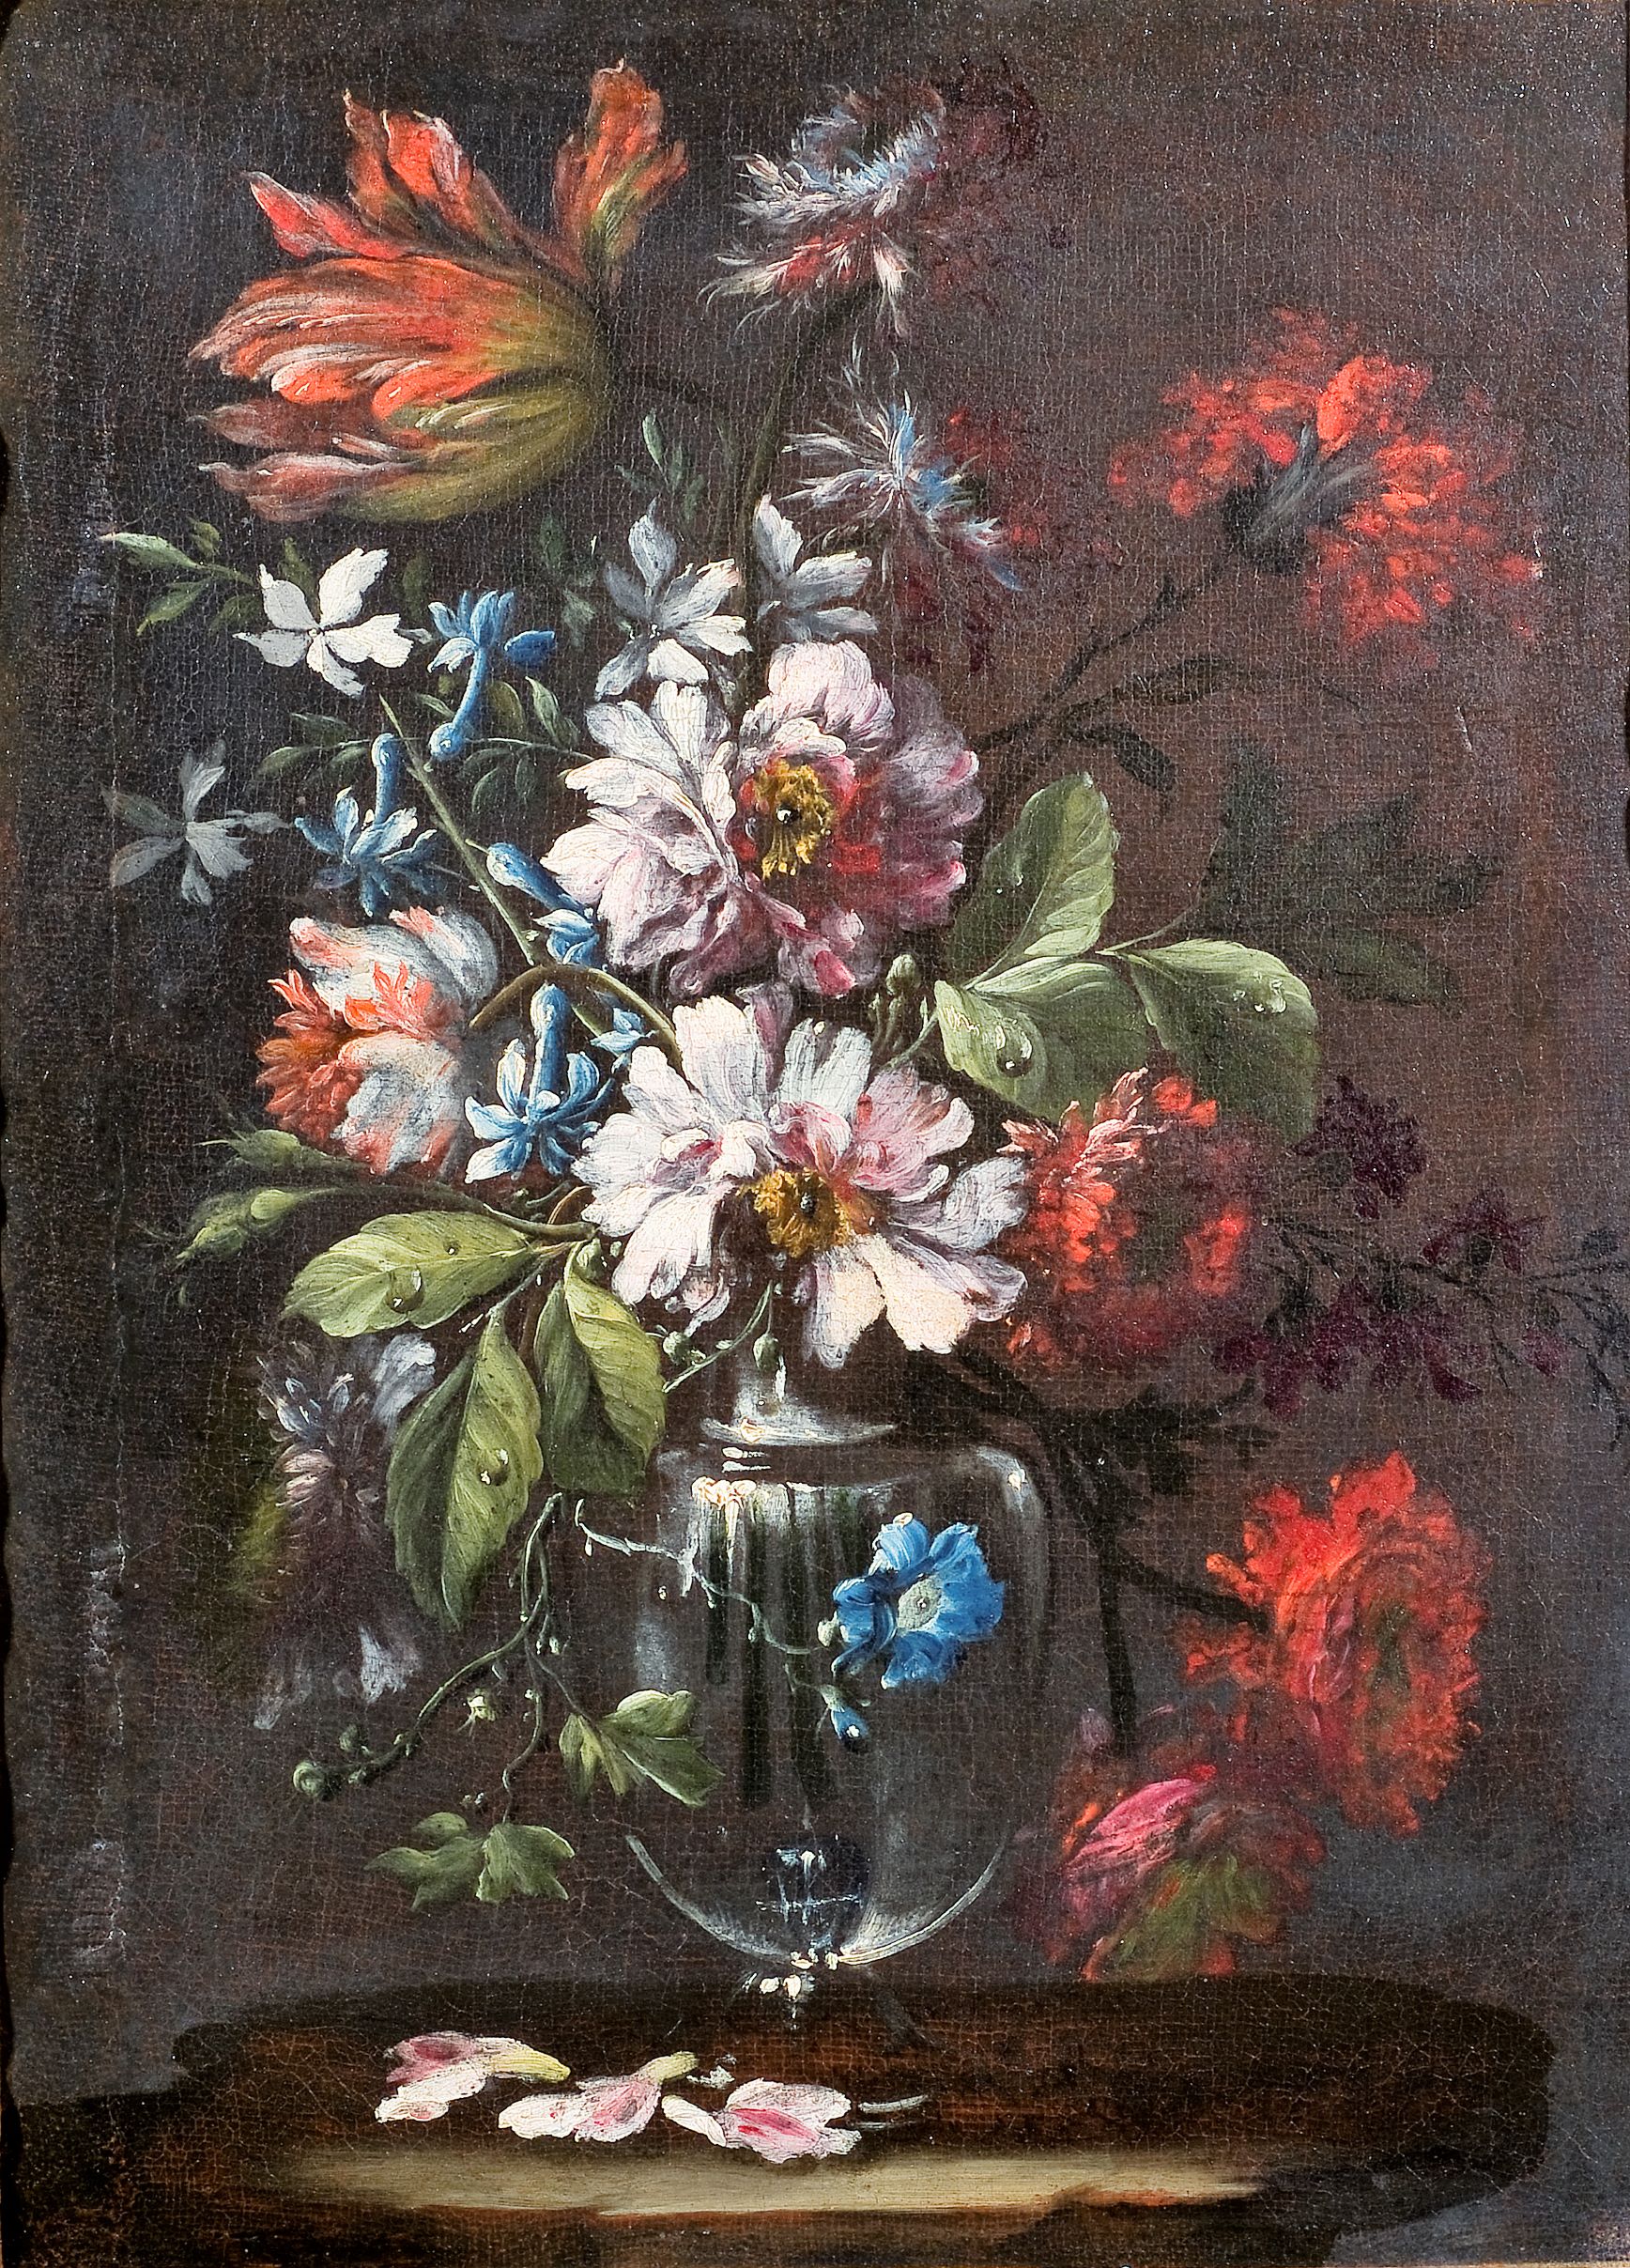 Vaso di vetro con fiori (dipinto, opera isolata) di Bona Francesco (maniera) - ambito napoletano (fine/ inizio XVII-XVIII)